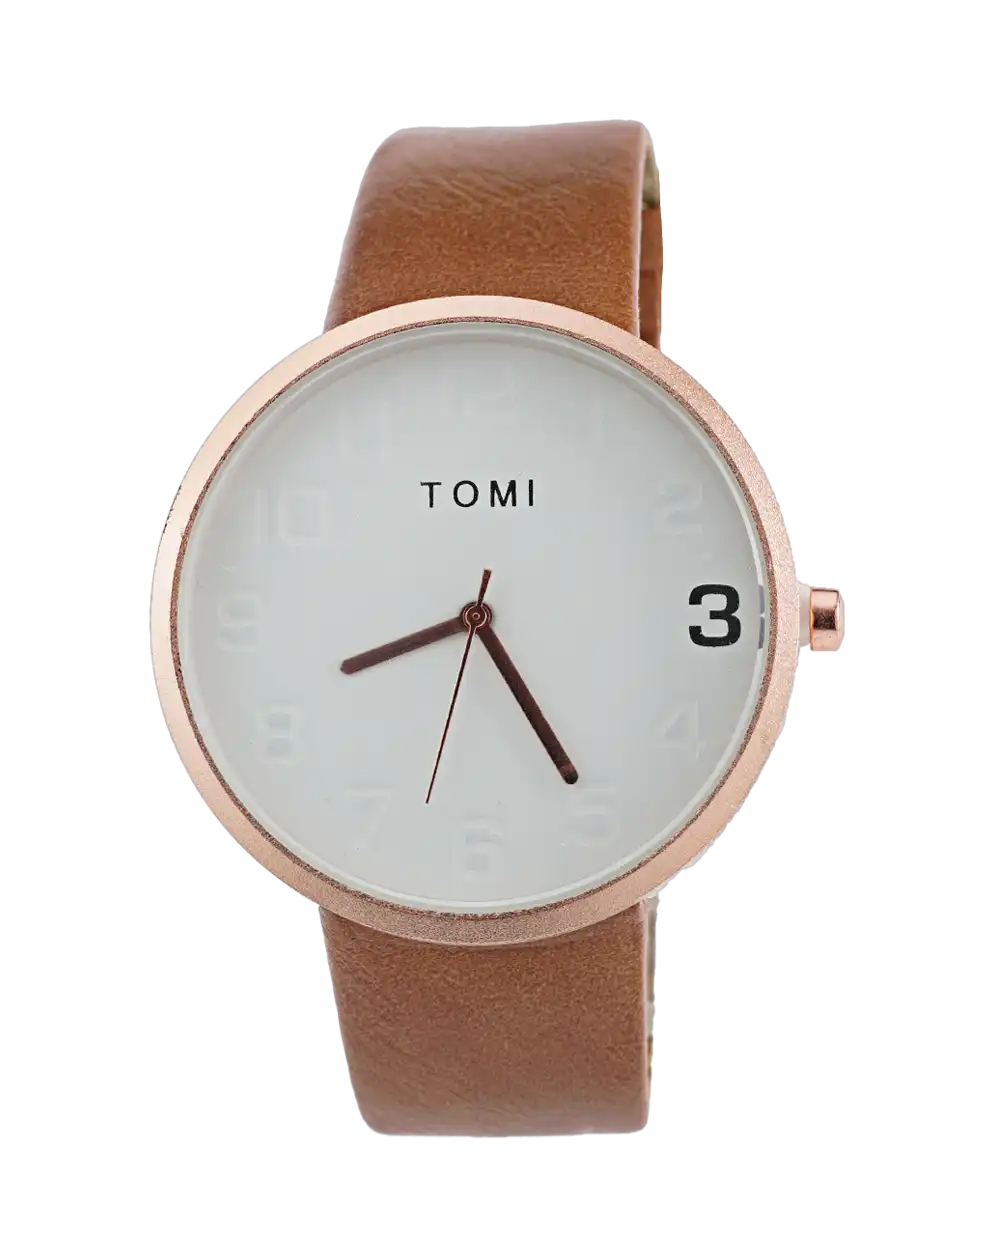 خرید ساعت مچی مردانه تامی TOMI - قیمت ساعت مچی بند چرمی ارزان - خرید ساعت مچی ارزان - ساعت مچی صفحه سفید ارزان - ساعت مچی مردانه تامی